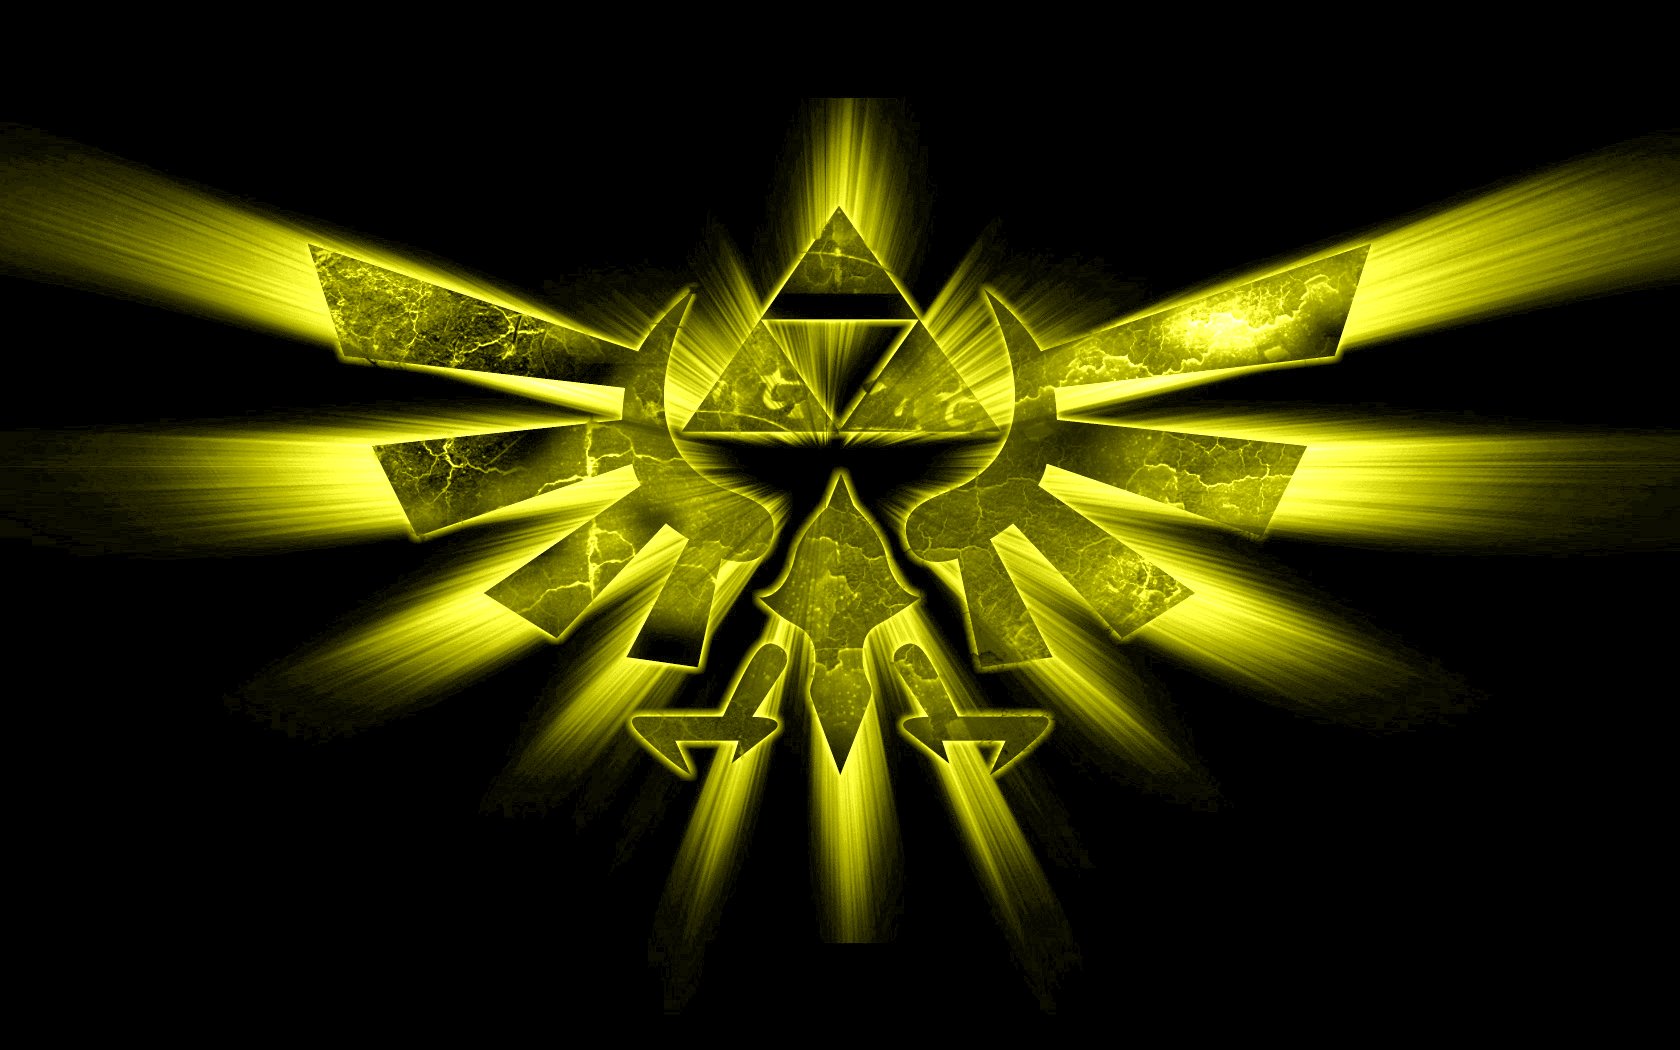 Triforce The Legend of Zelda wallpaper 1680x1050 262336